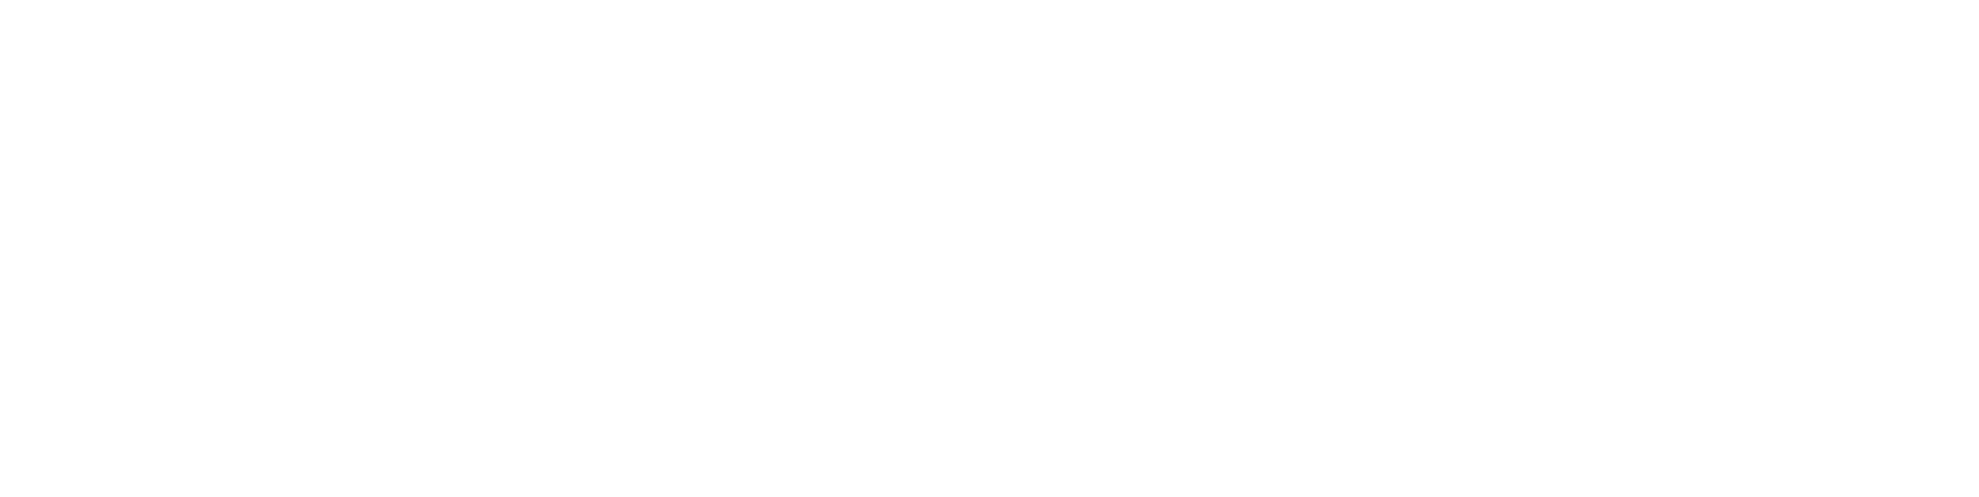 danavation-logo-white-1